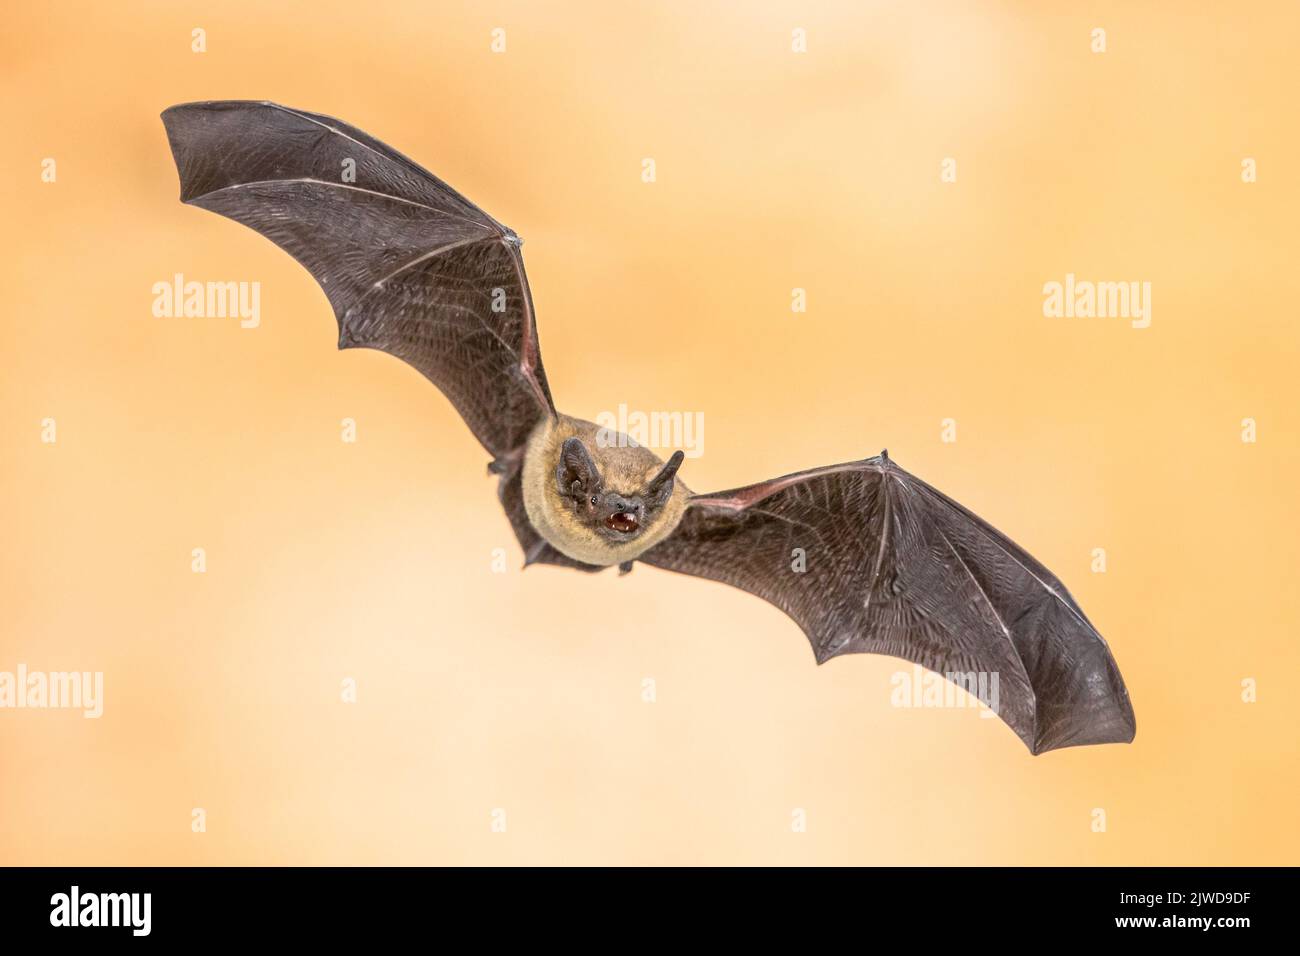 Pipistrelle bat (pipistrellus pipistrellus) primo piano di un animale volante in soffitta di casa su sfondo vivido. Questa specie è conosciuta per il roosting e il livv Foto Stock